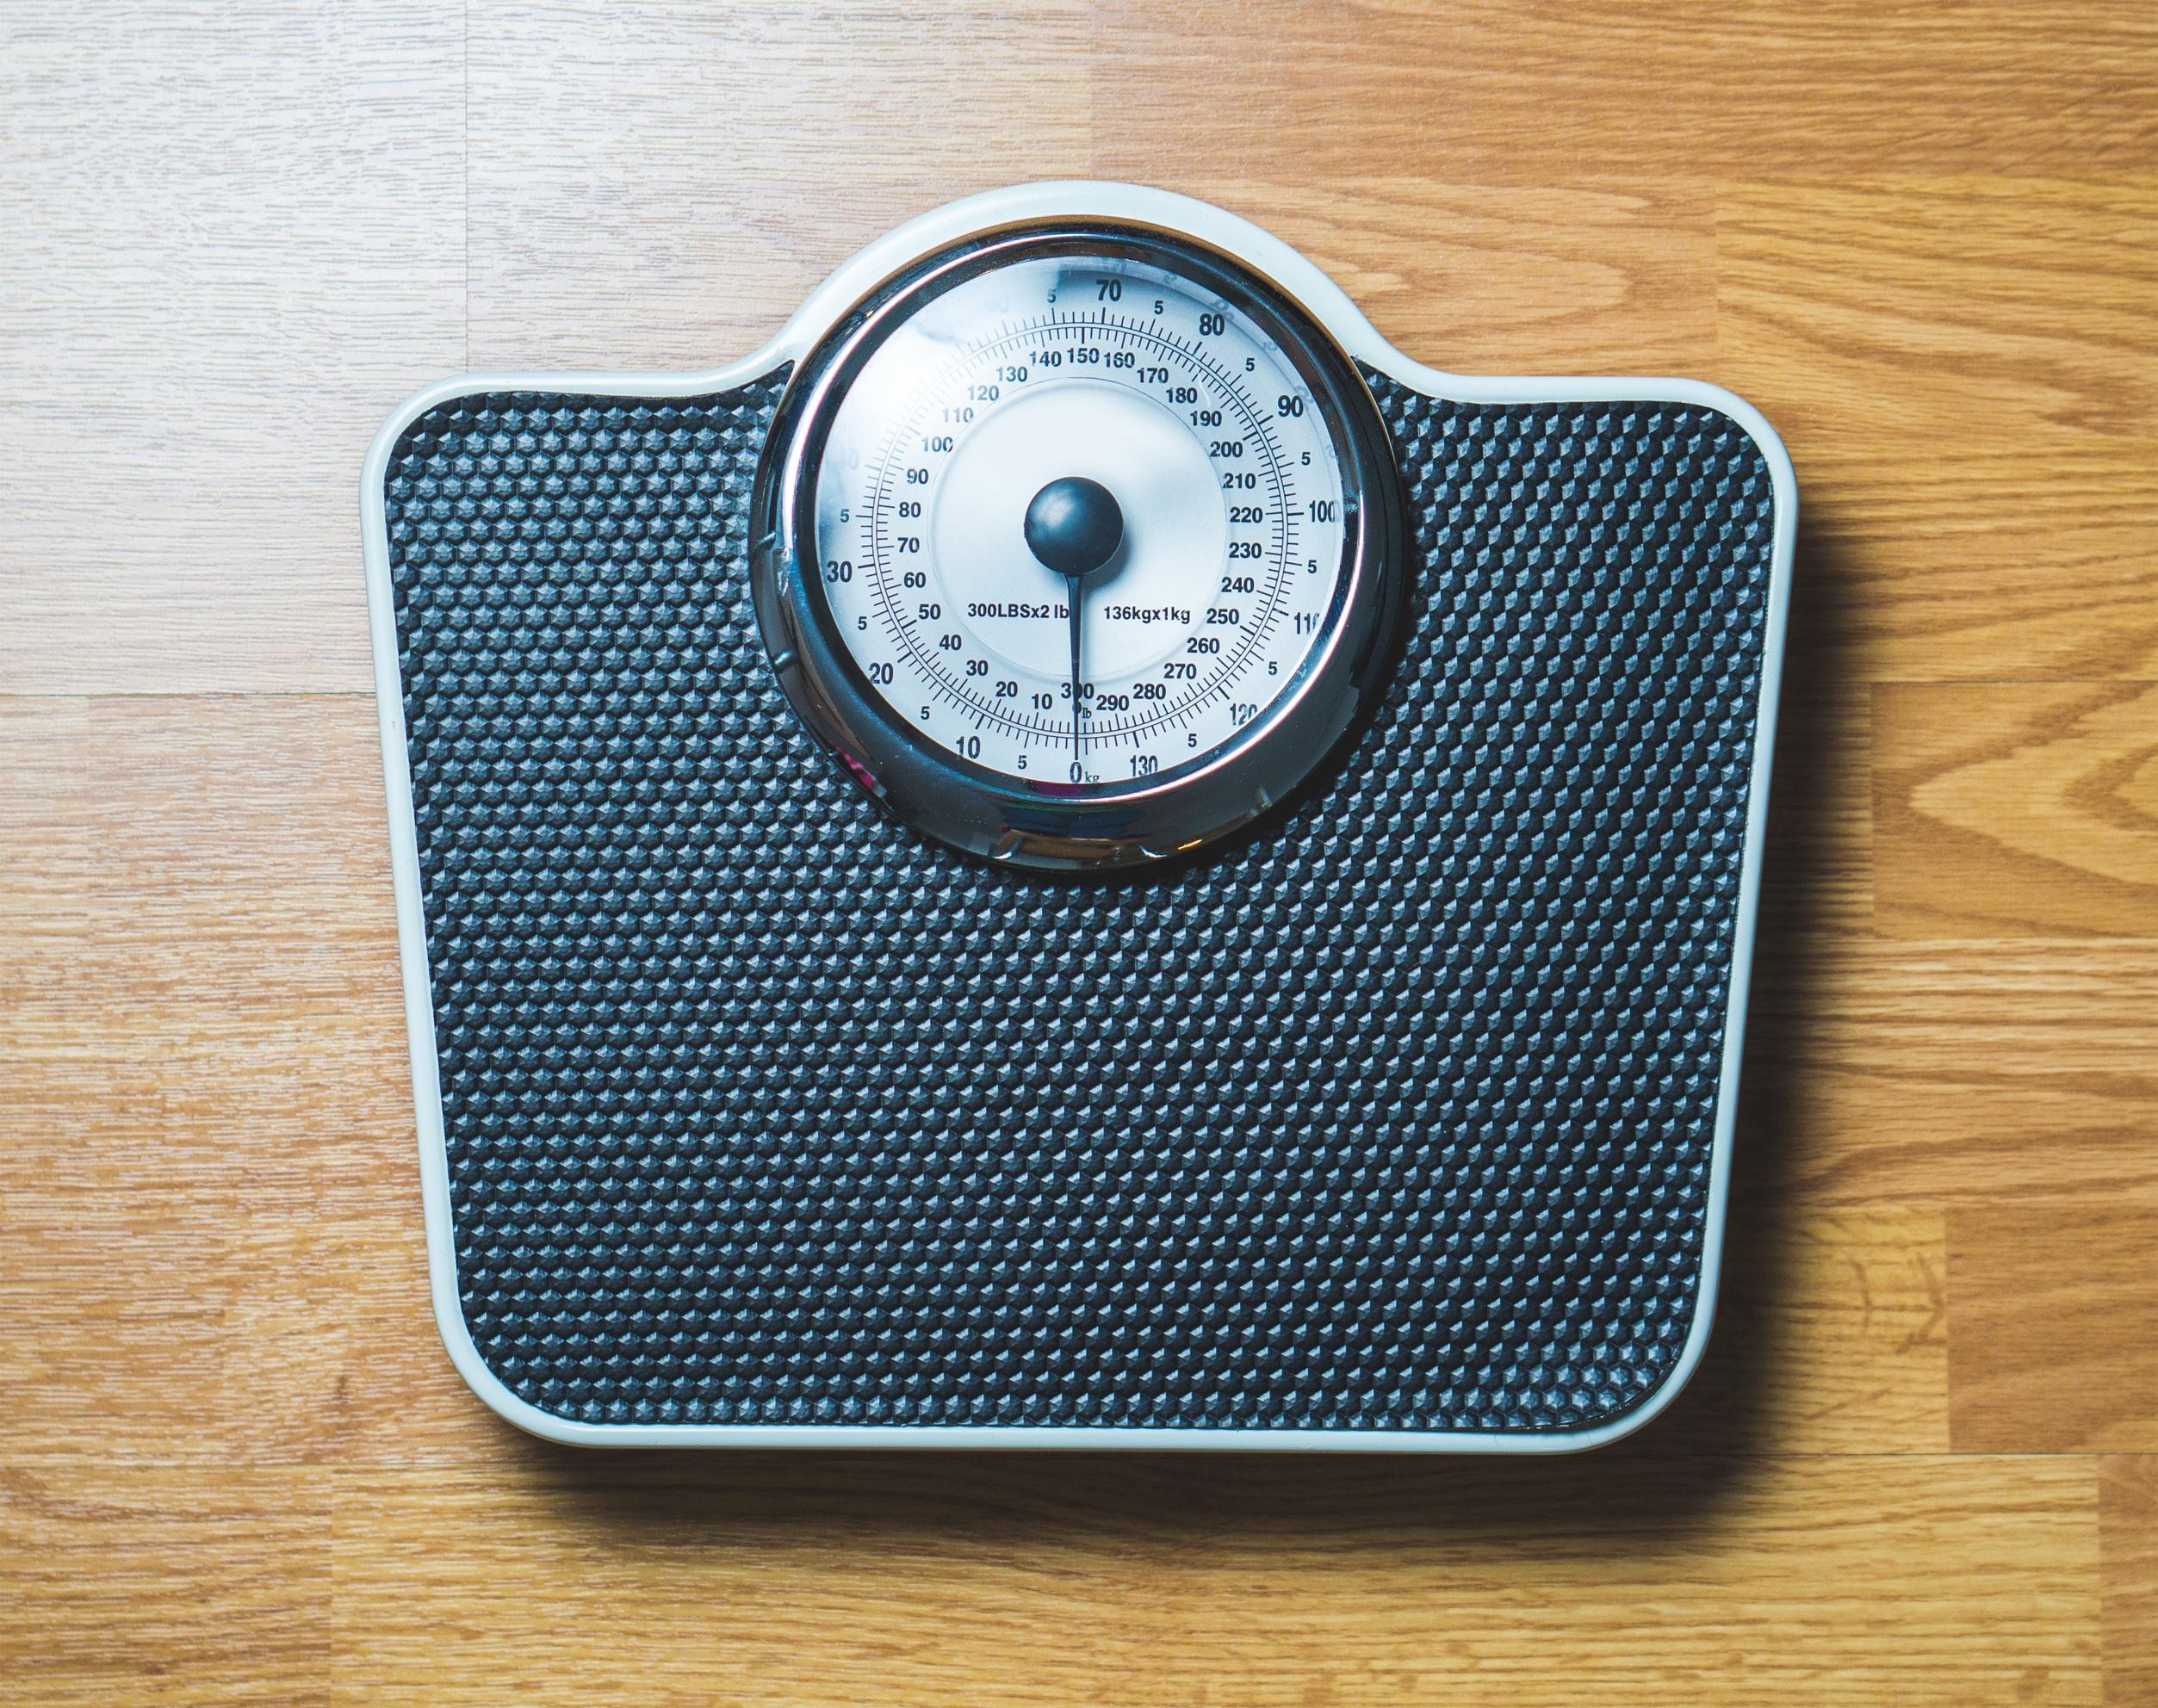 Mantendo um equilíbrio saudável entre perda de peso e vida social